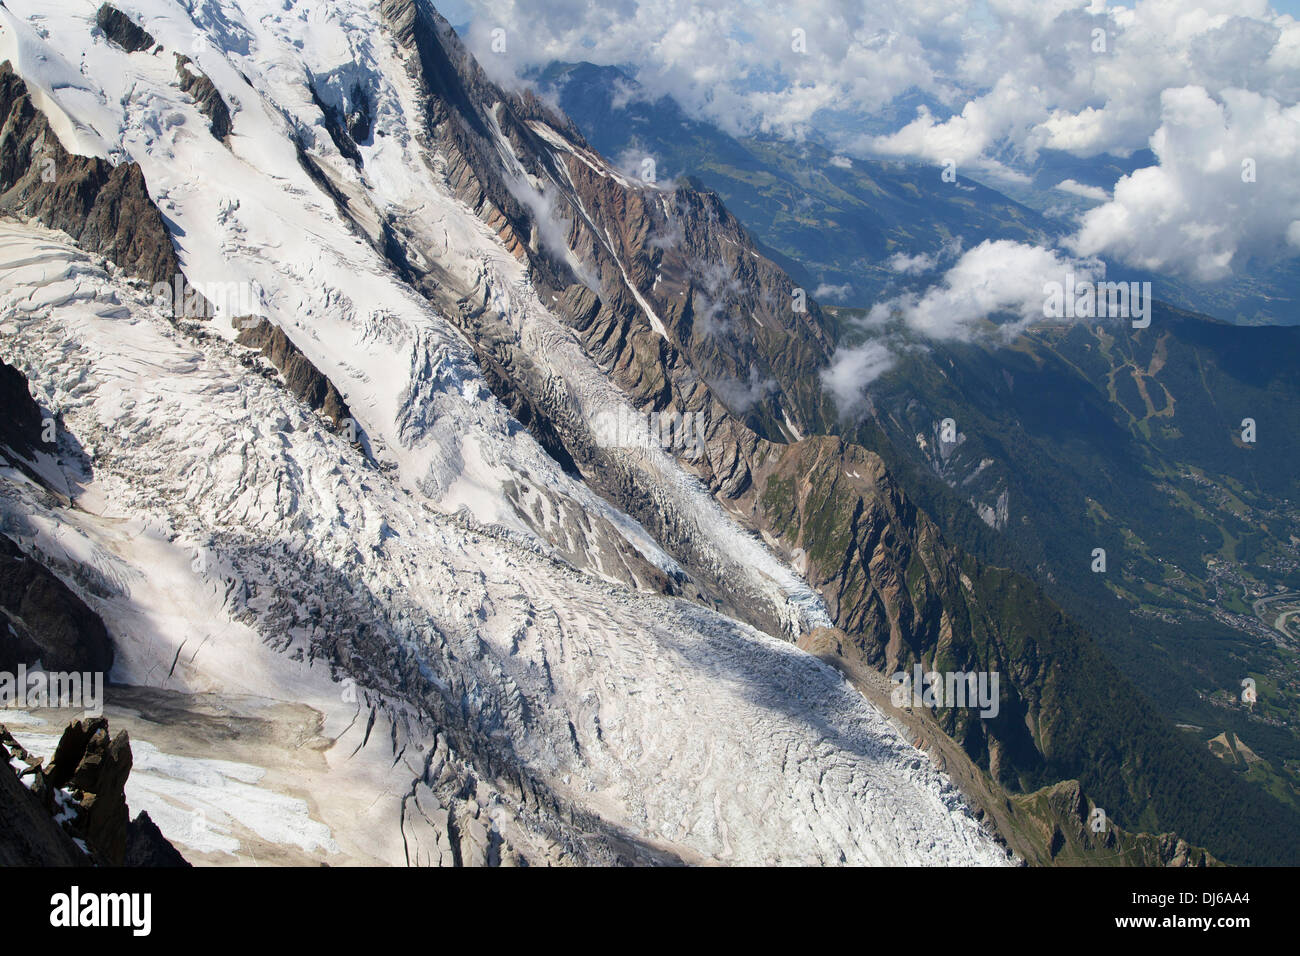 La jonction de l'Union européenne, les glaciers de Taconnaz et des Bossons dans le massif du Mont Blanc, Alpes Françaises. Banque D'Images